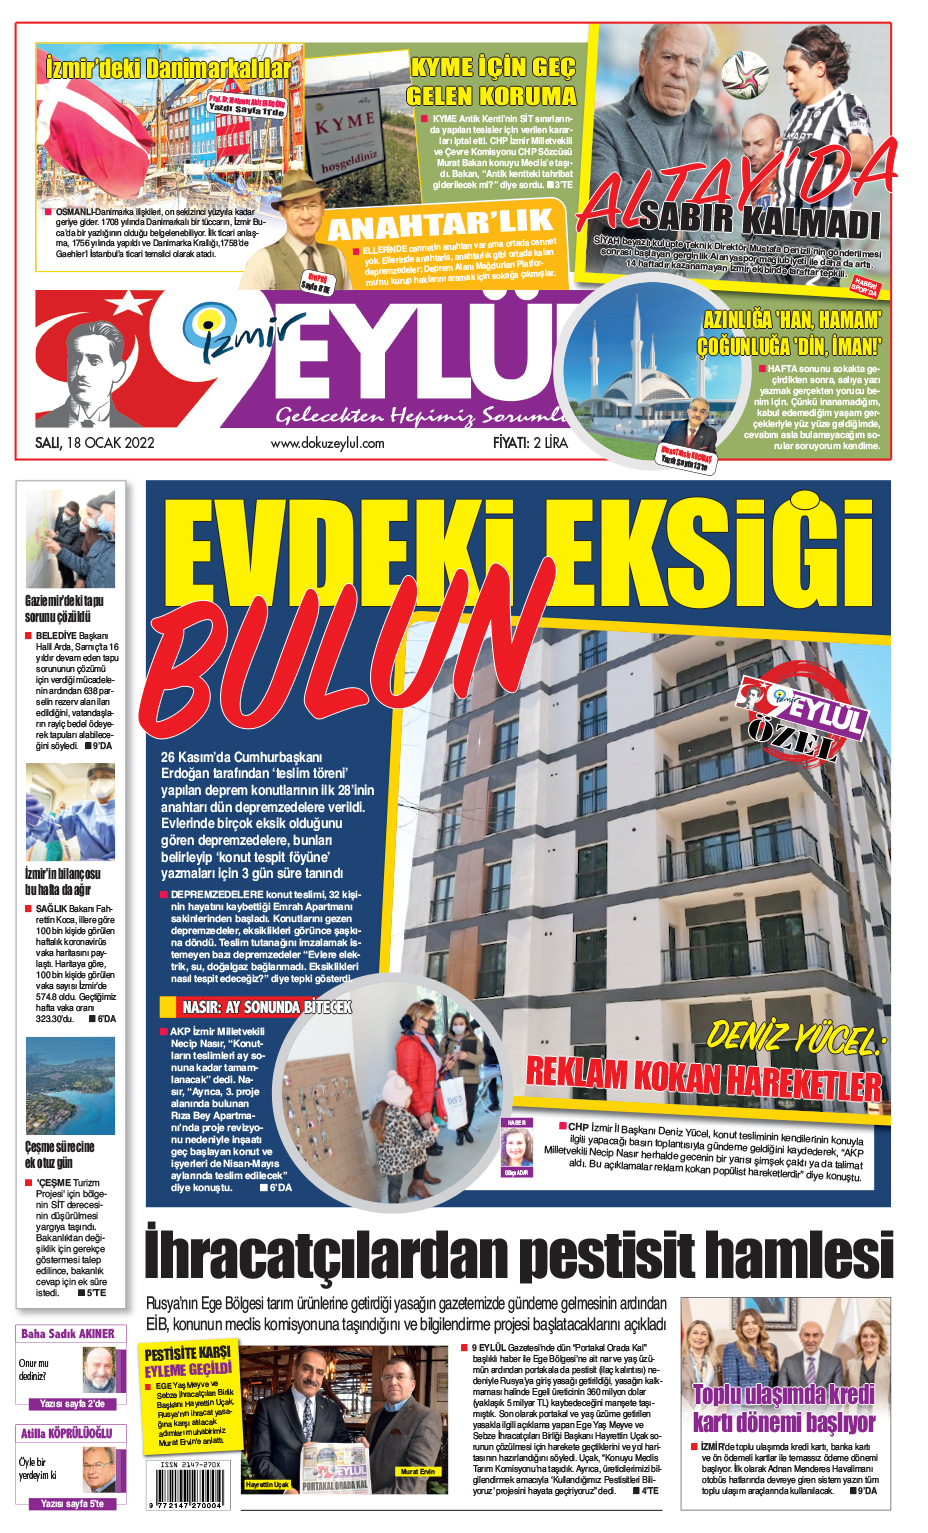 Dokuz Eylül Gazetesi | İzmir, Türkiye, Dünya'dan Güncel Haberler - 18.01.2022 Manşeti